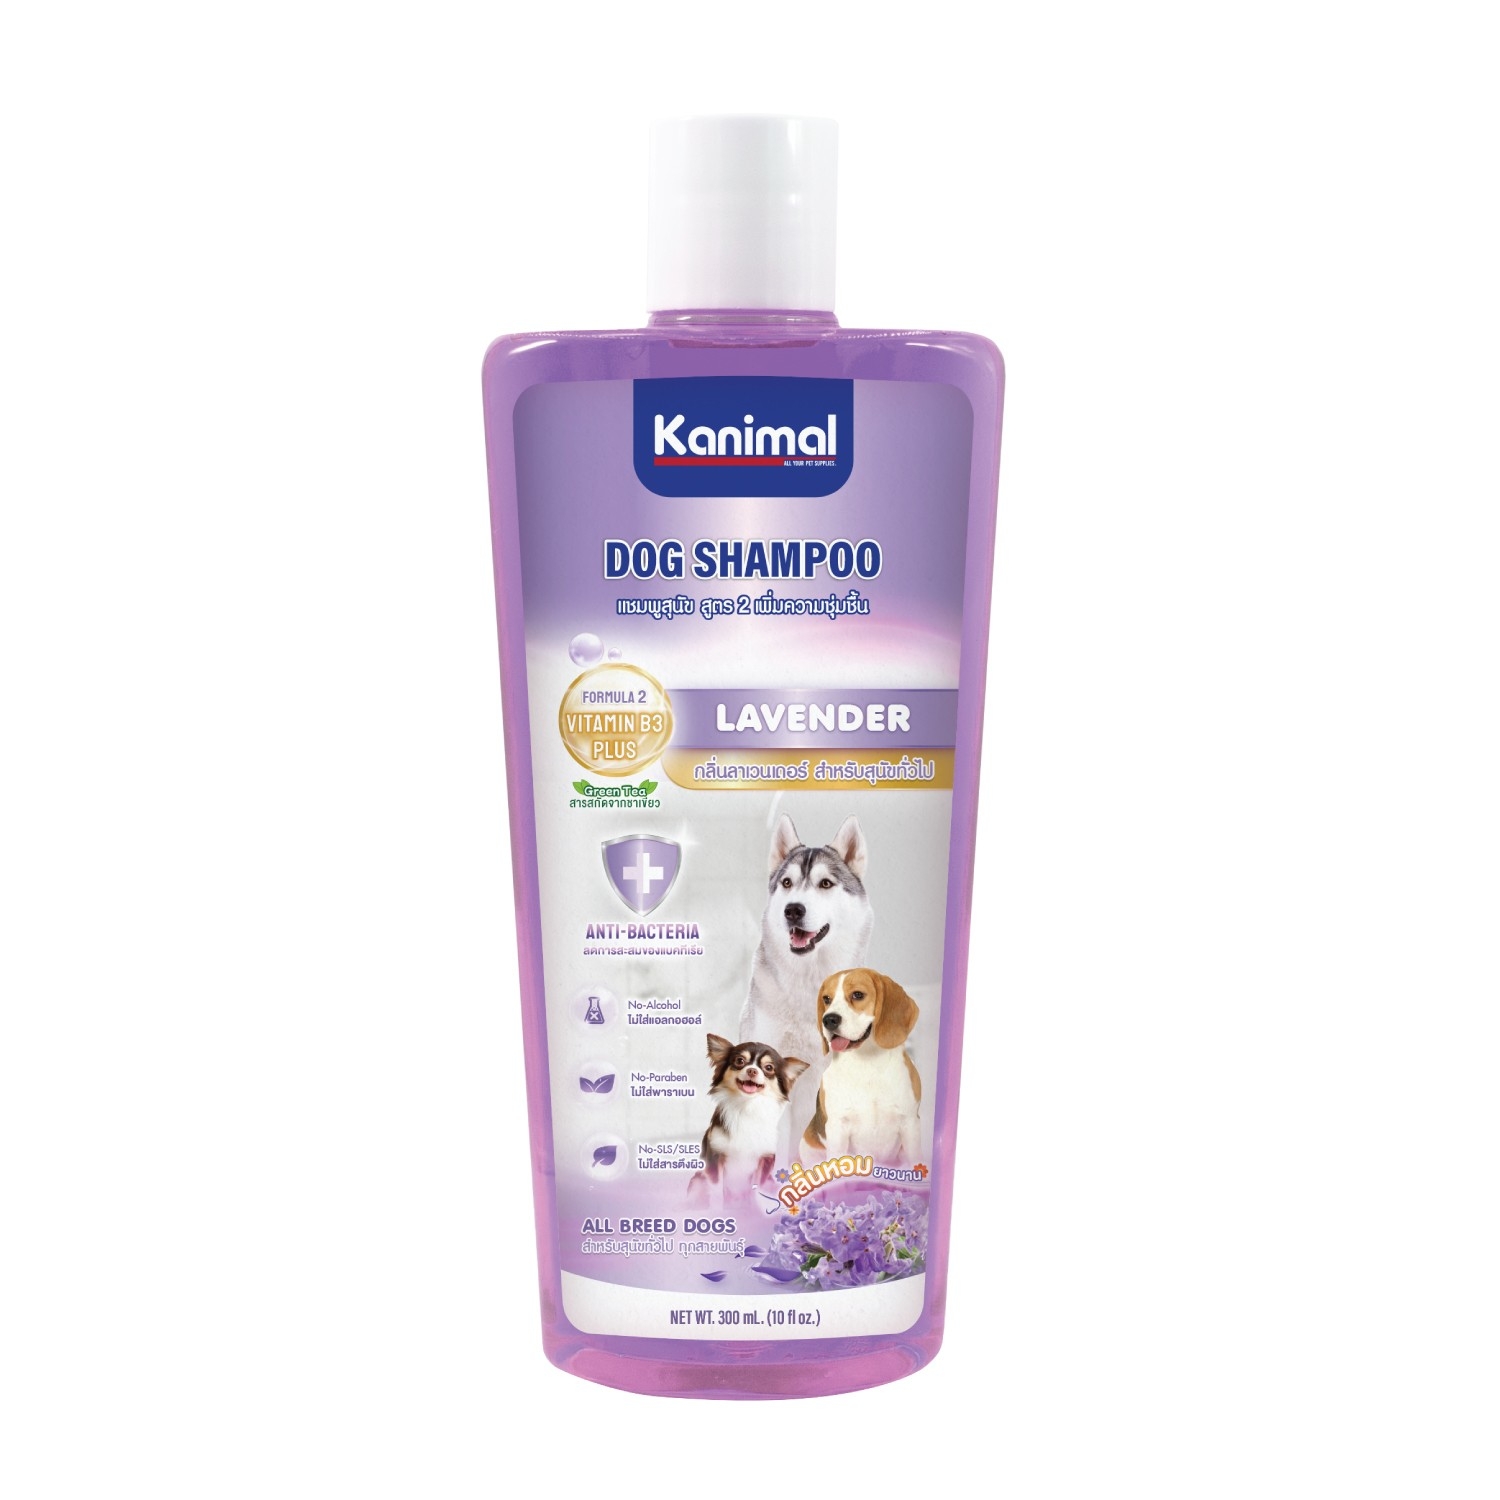 Kanimal Dog Lavender 300 ml. แชมพูสุนัข สูตรเพิ่มความุ่มชื้น สำหรับสุนัขทั่วไป (300 มล./ขวด)